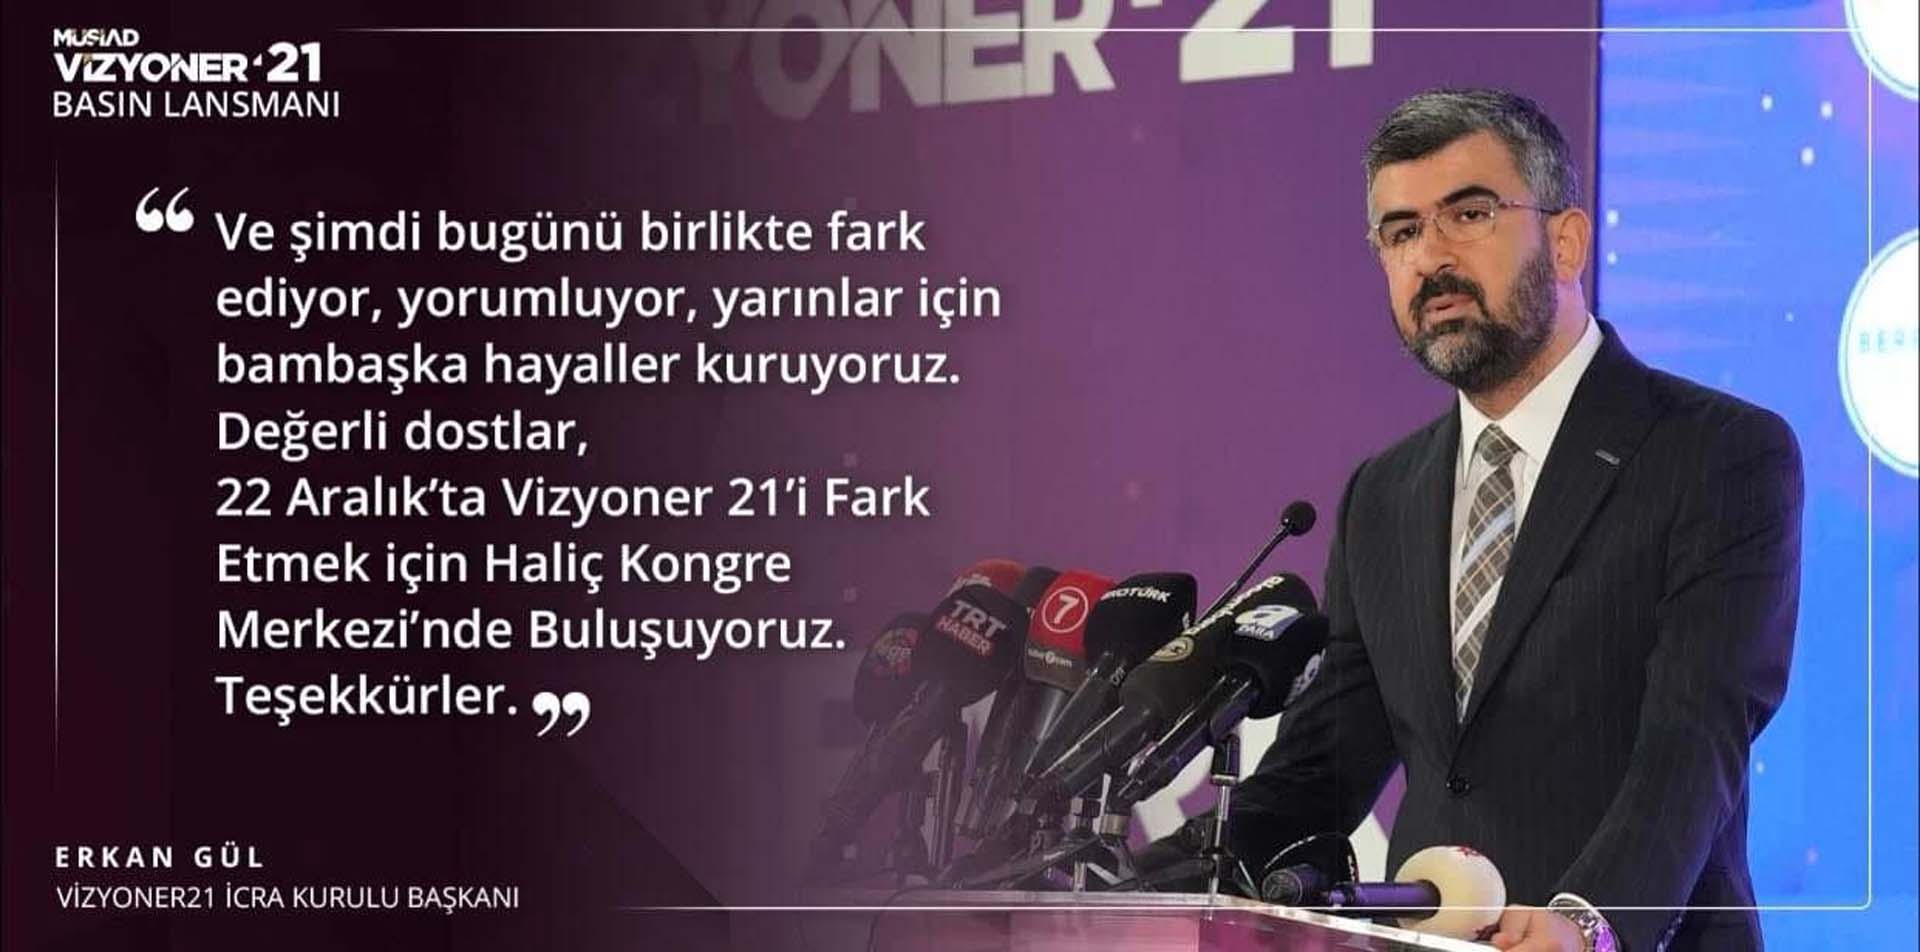 Pendikli iş insanı Erkan Gül, MÜSİAD, Vizyoner'21'i anlattı! 